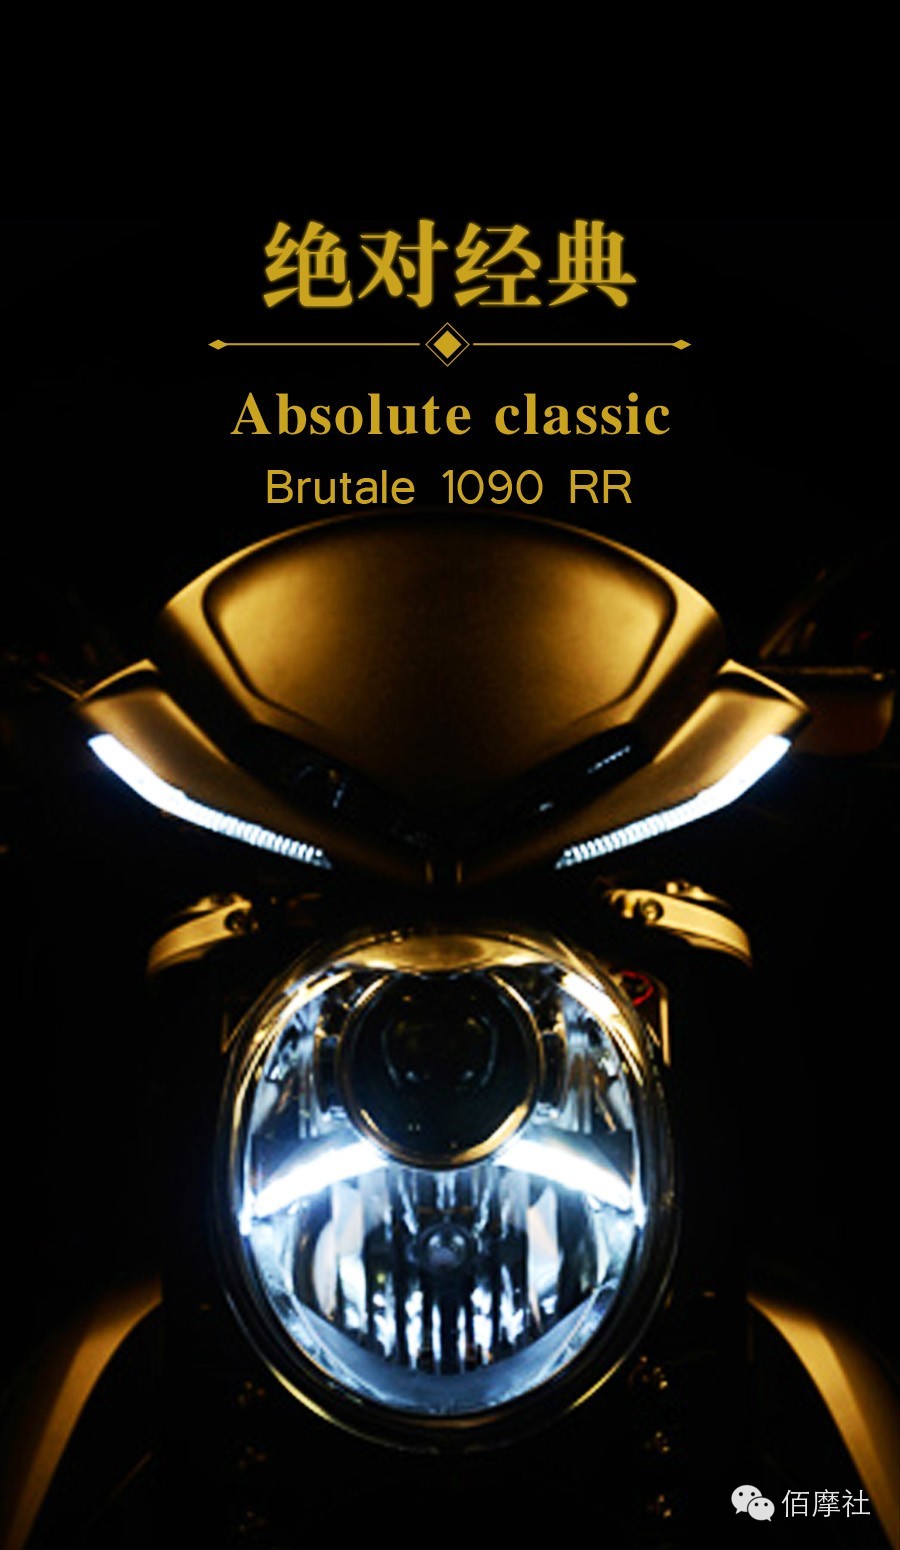  1奥古斯塔1090 RR摩托车——工程设计和性能的完美结合。带来的无与伦比的驾驶乐趣。